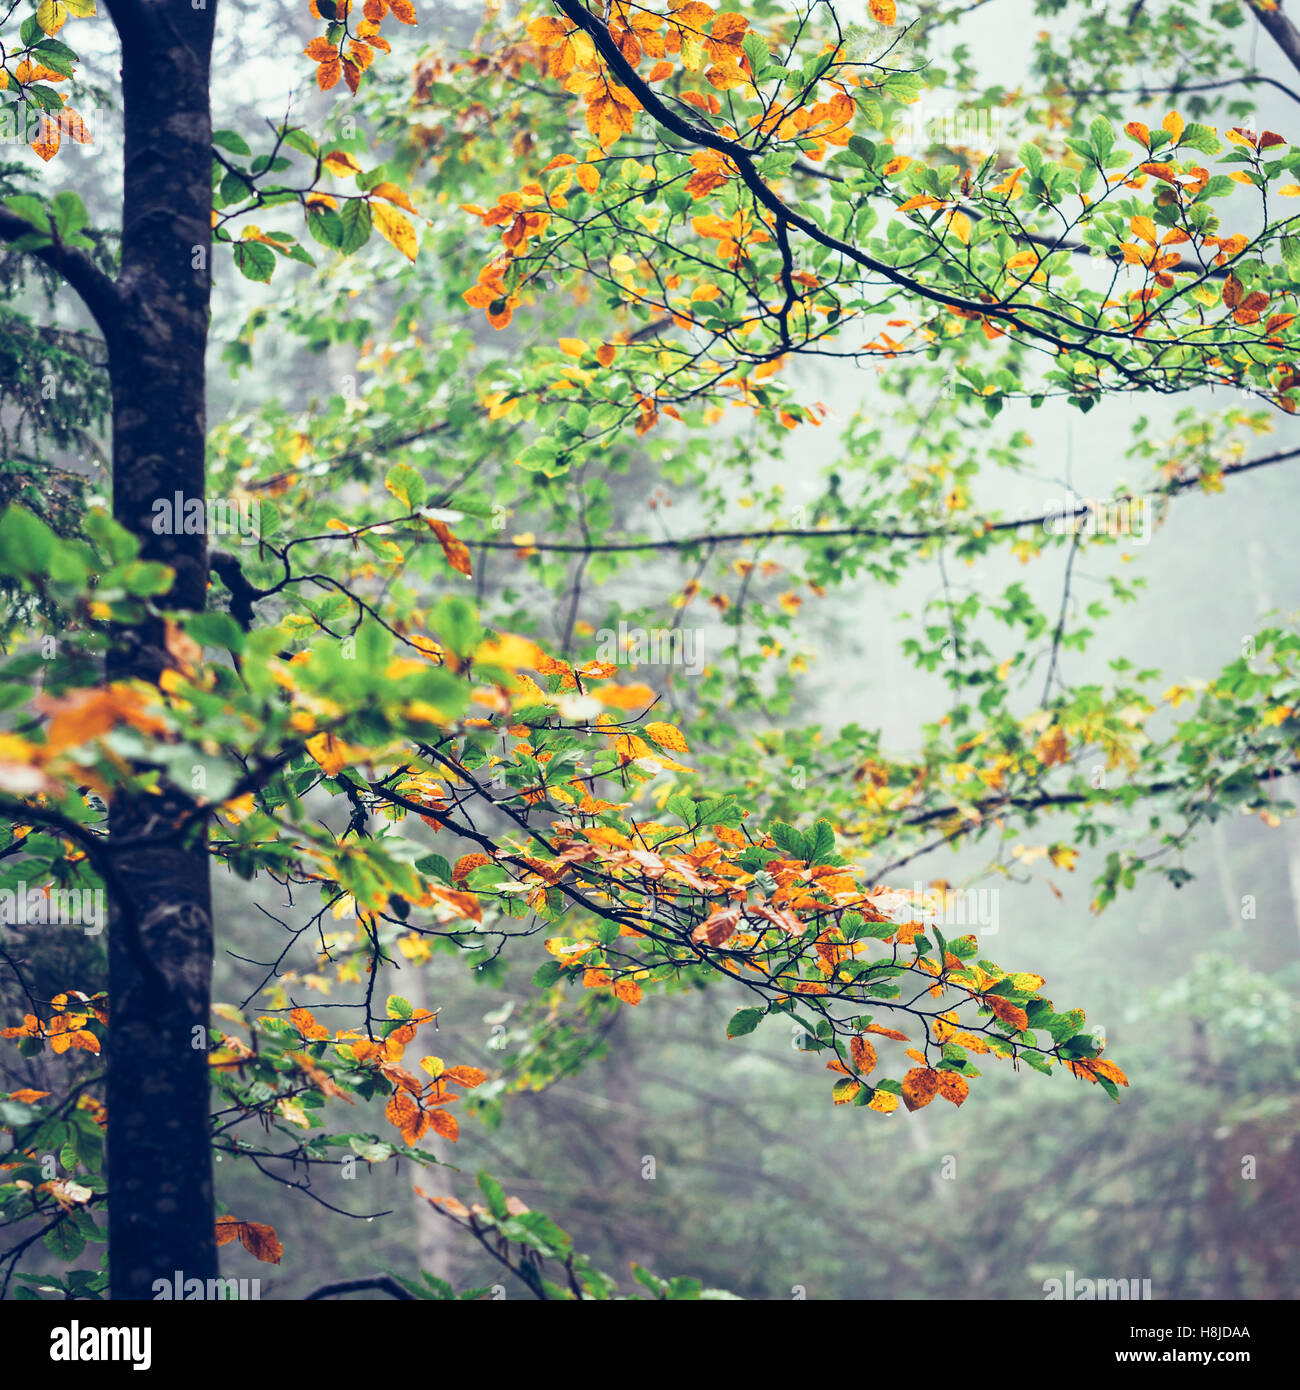 Misty autumn forest Stock Photo